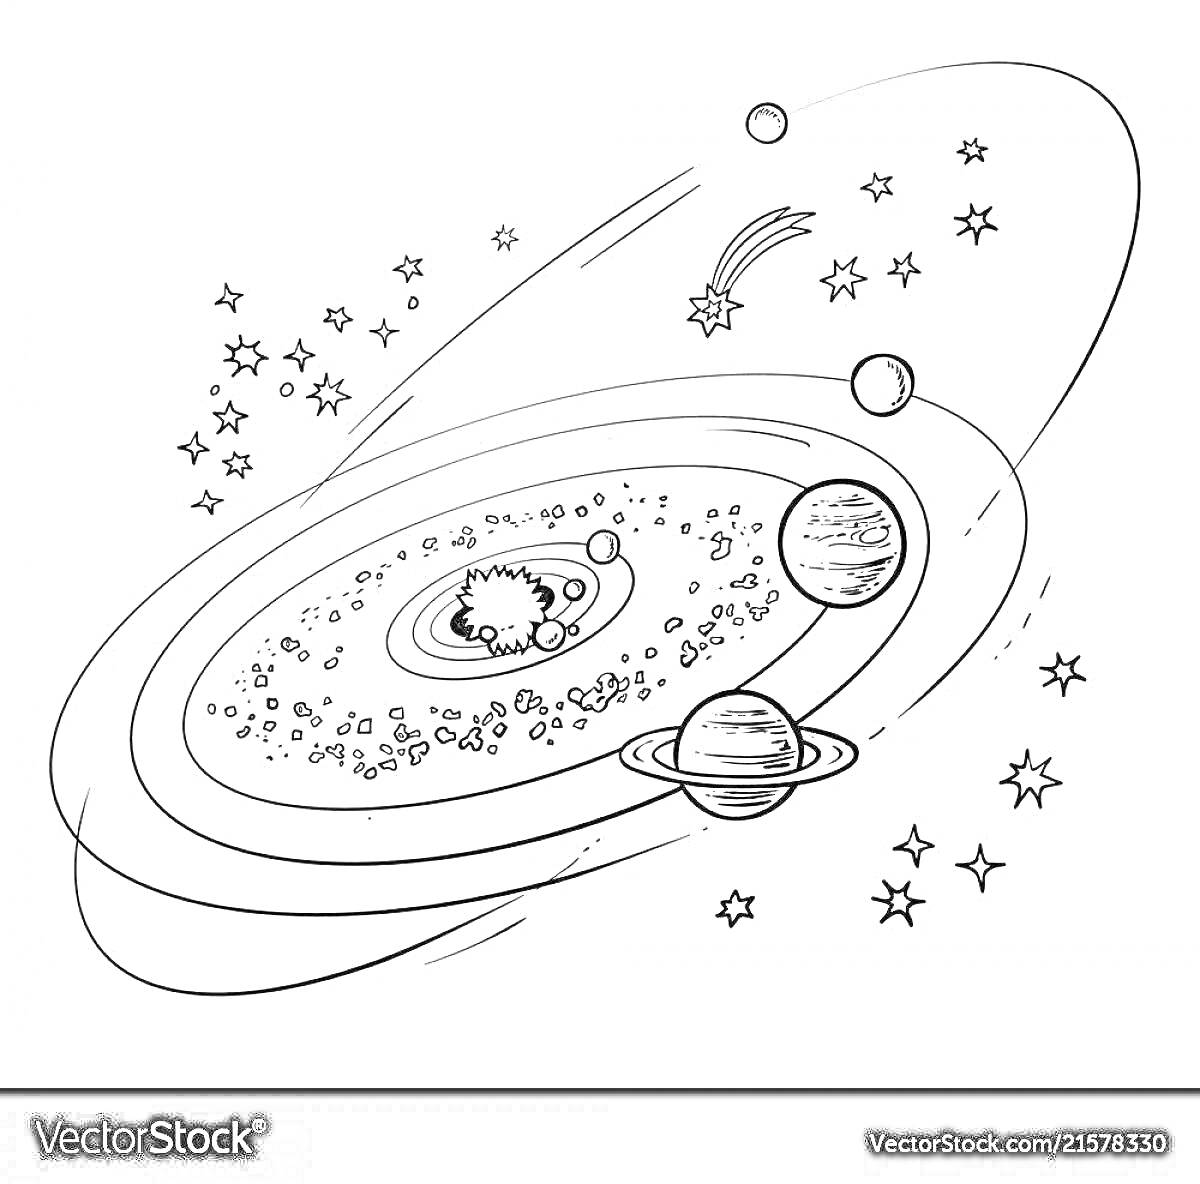 На раскраске изображено: Космос, Планеты, Солнечная система, Комета, Звезды, Астероиды, Галактика, Астрономия, Орбиты